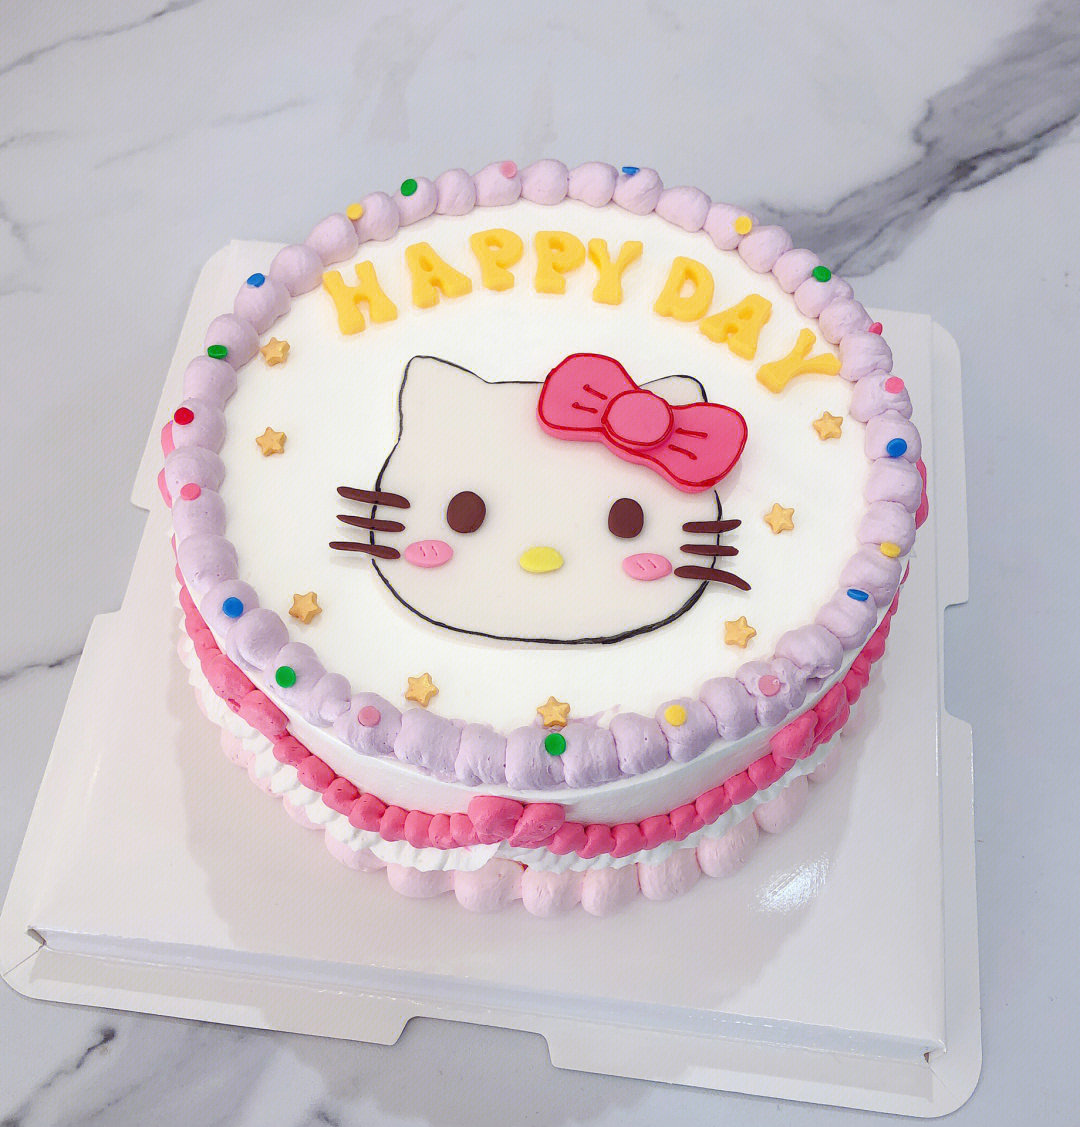 kitty猫蛋糕简笔画图片